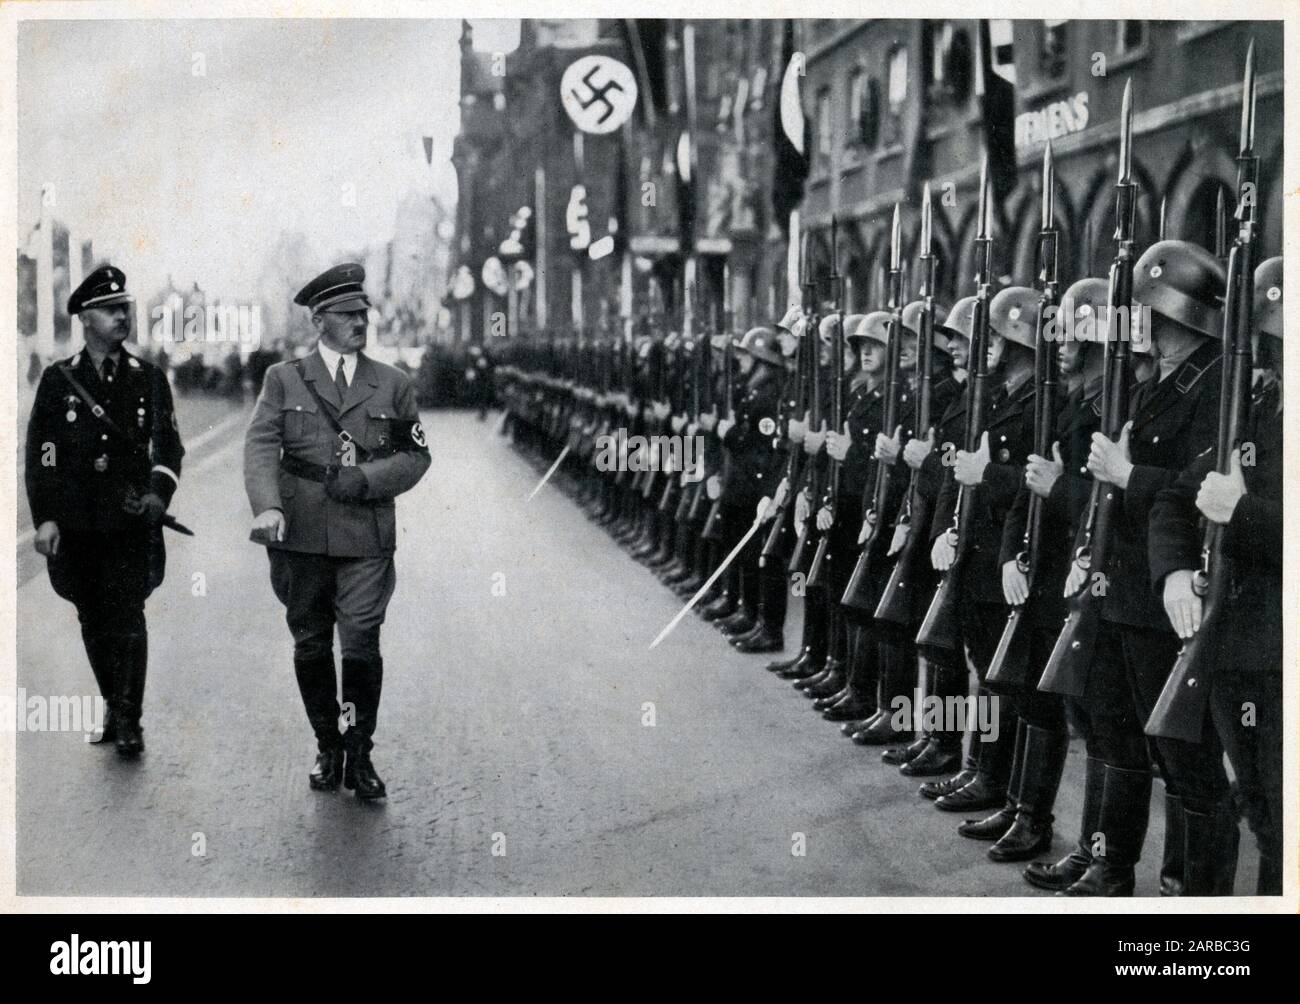 Hitler presentó Las Leyes de Nuremberg sobre ciudadanía y raza dirigidas contra los judíos. Por primera vez, mostró los resultados del rearme alemán. Fecha: 1935 De Septiembre Foto de stock